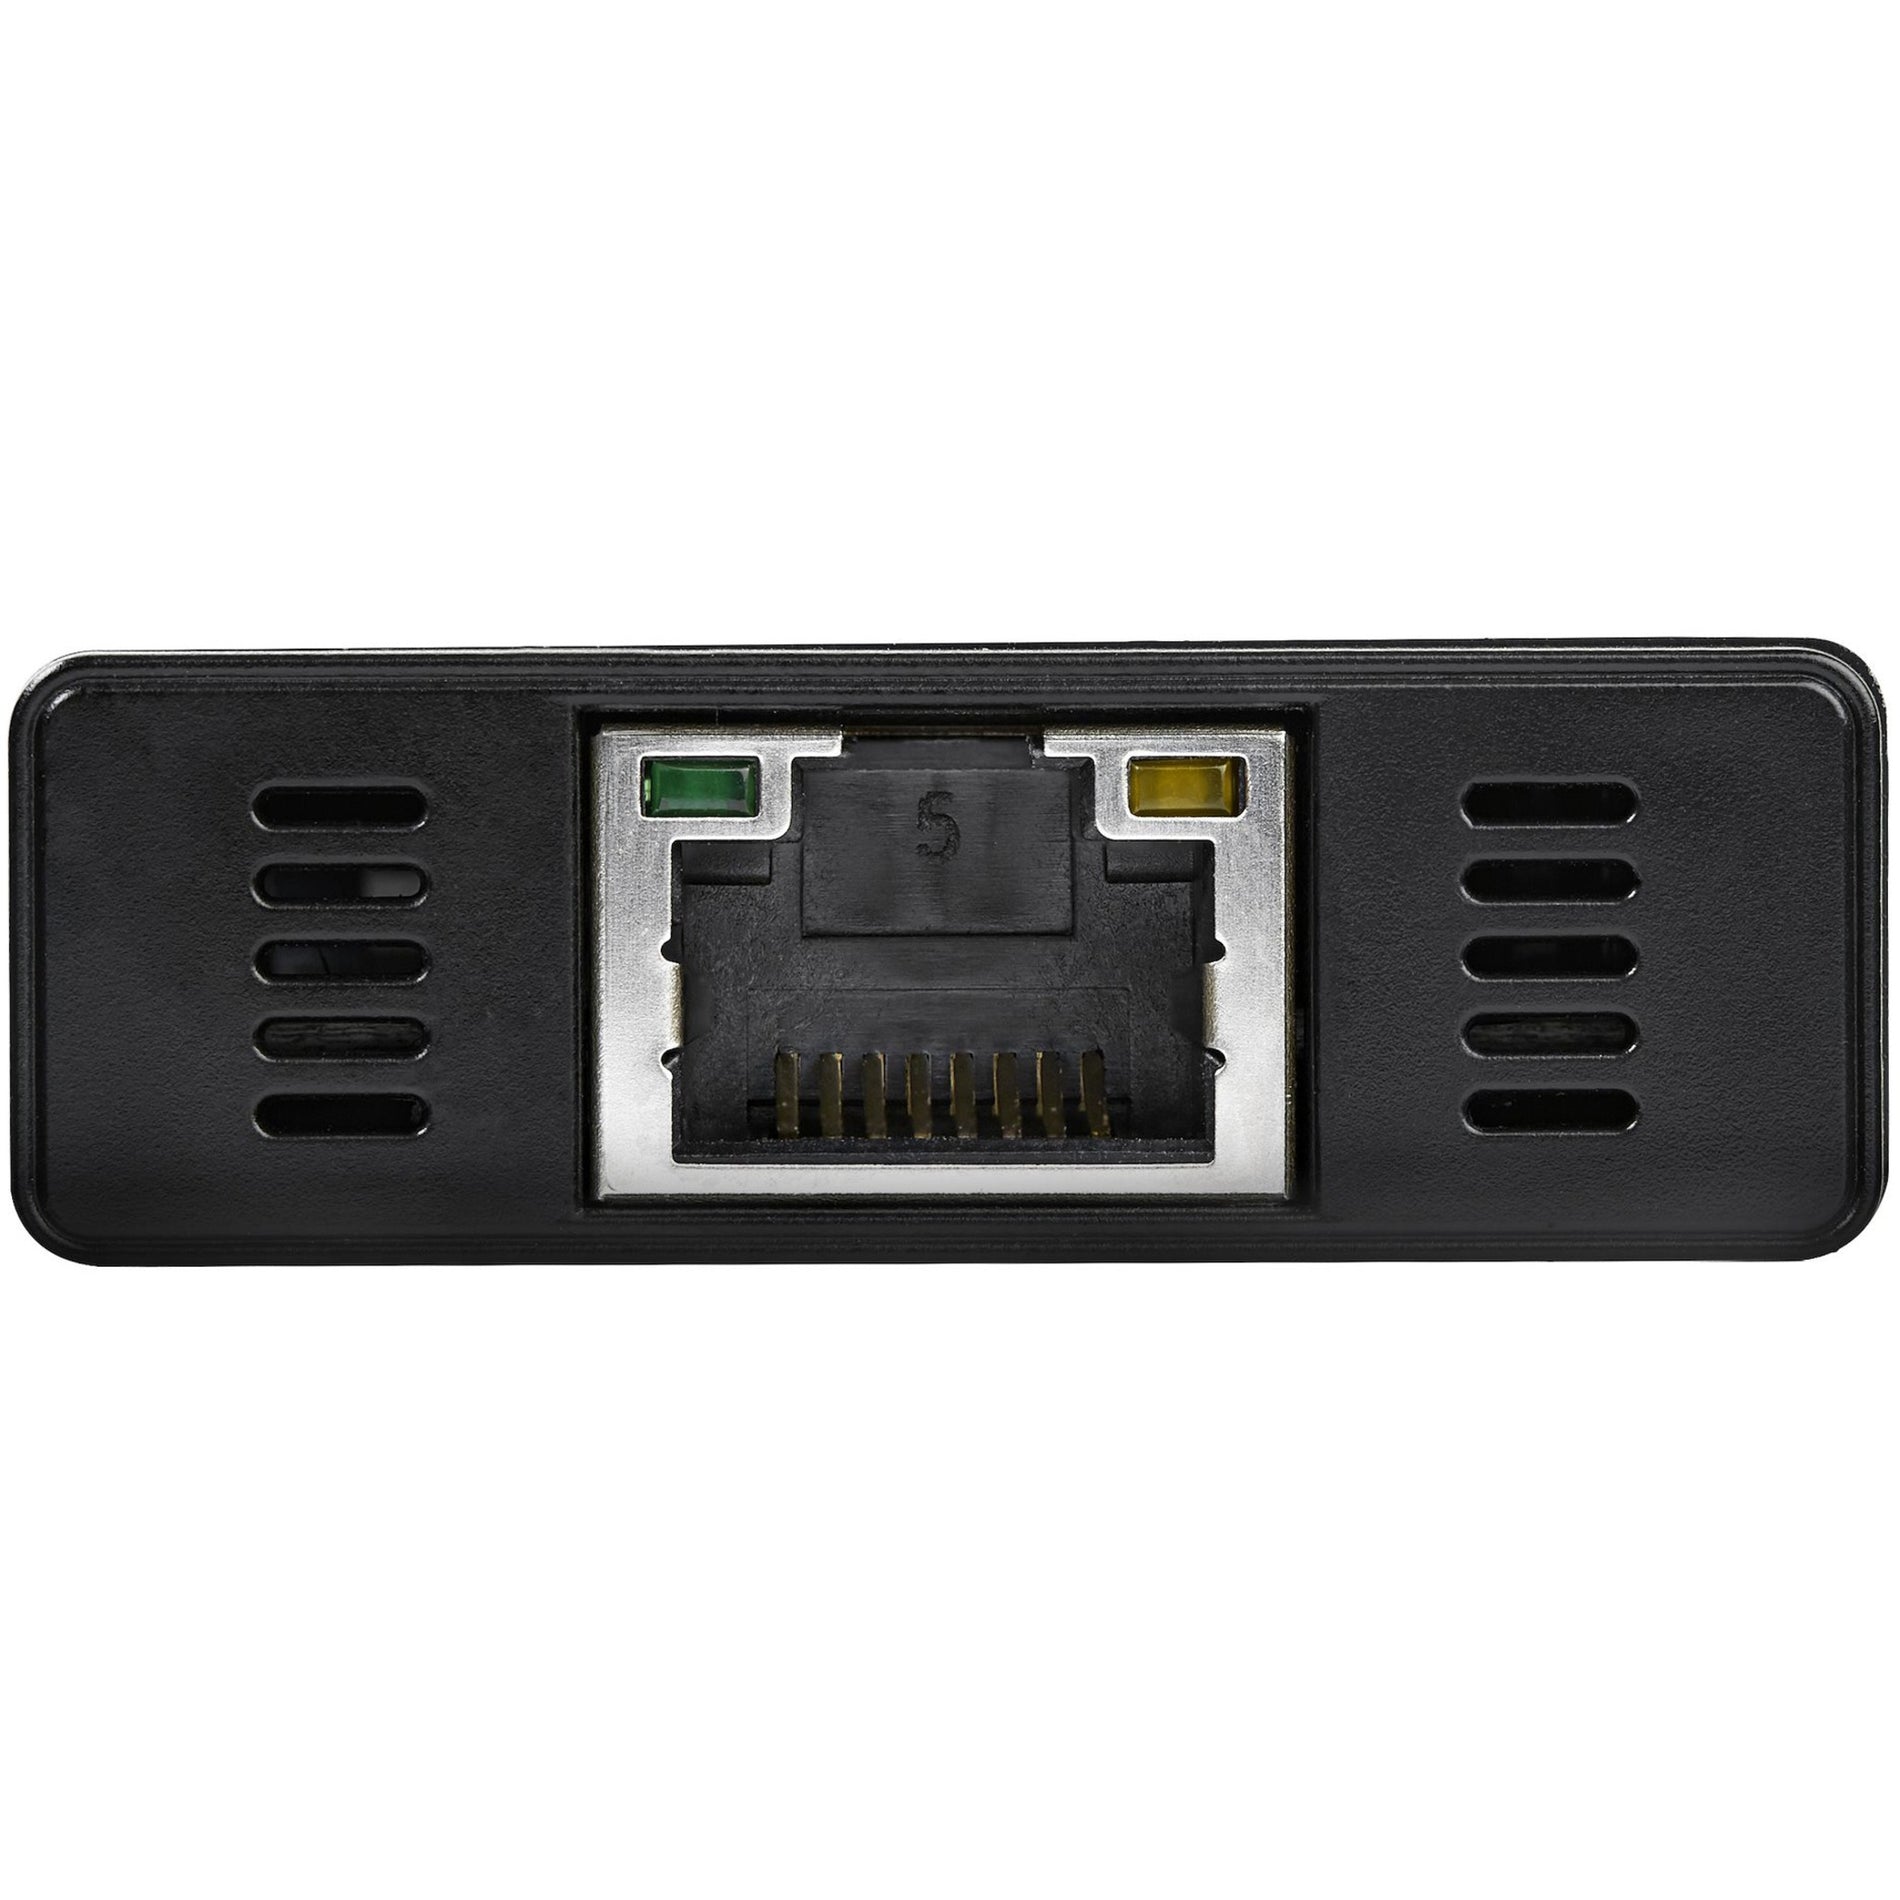 星巴克科技公司 ST3300GU3B 铝 USB 3.0 集线器与千兆以太网适配器 NIC，3 端口便携式，黑色 星巴克科技公司 铝 USB 3.0 集线器与千兆以太网适配器 NIC，3 端口便携式，黑色